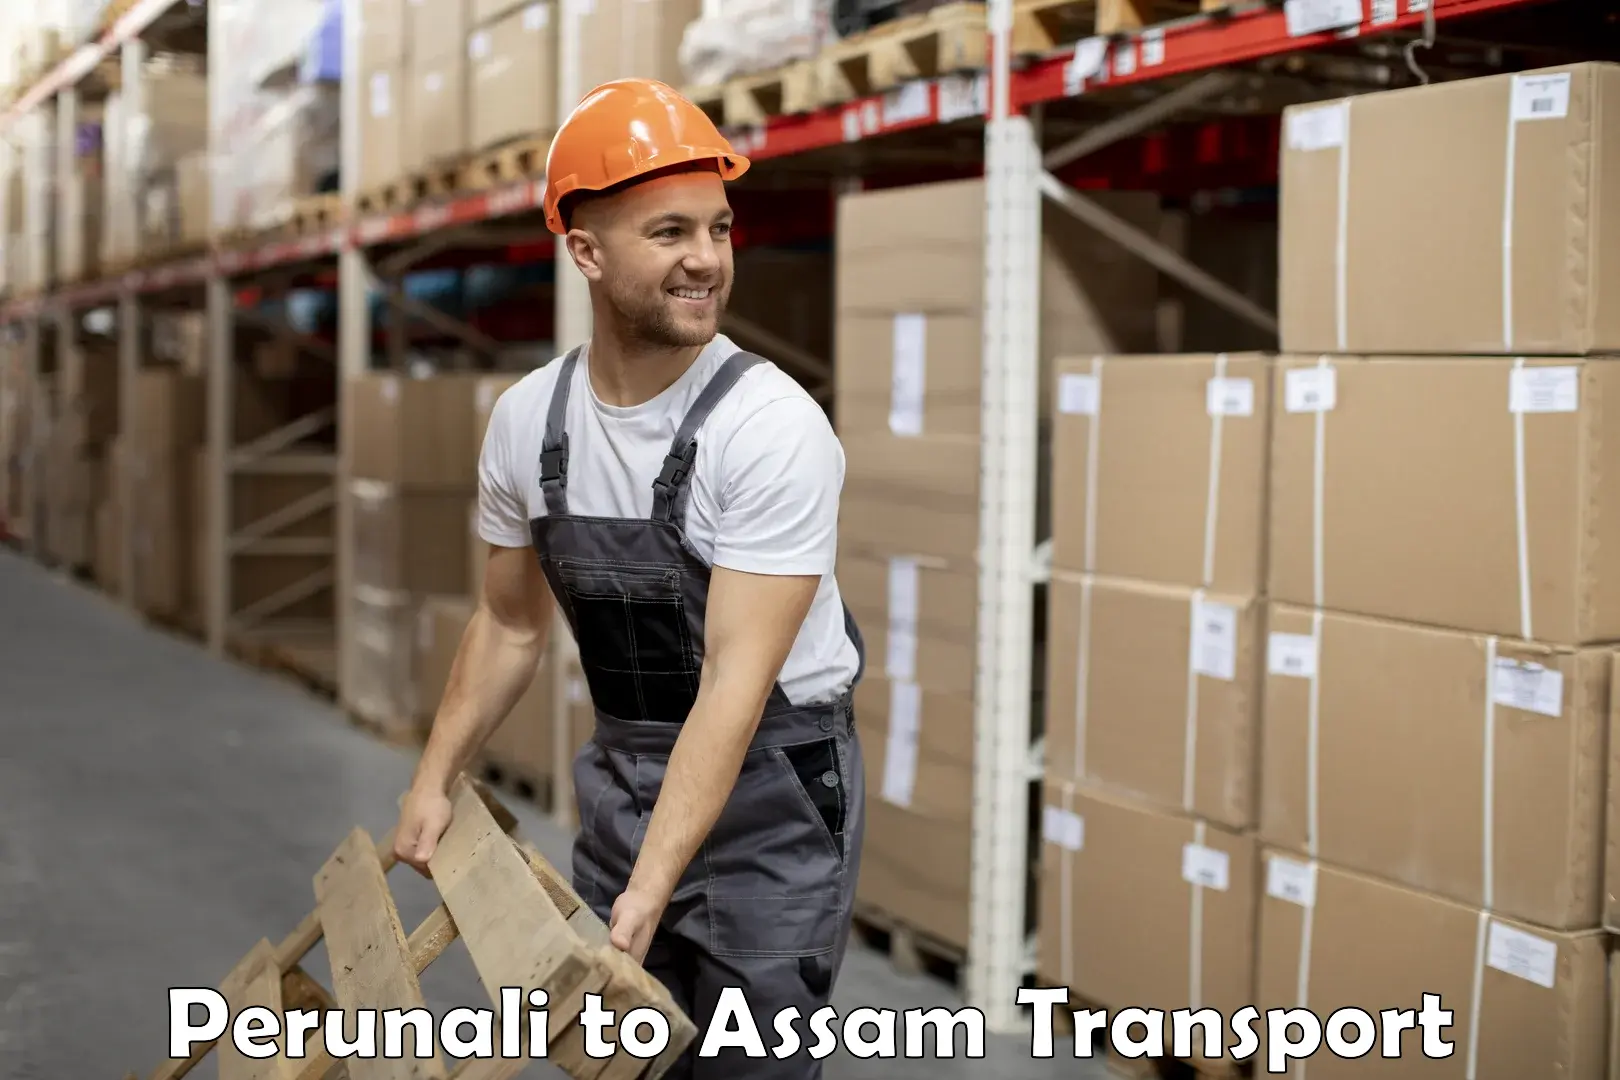 Transport services Perunali to Assam